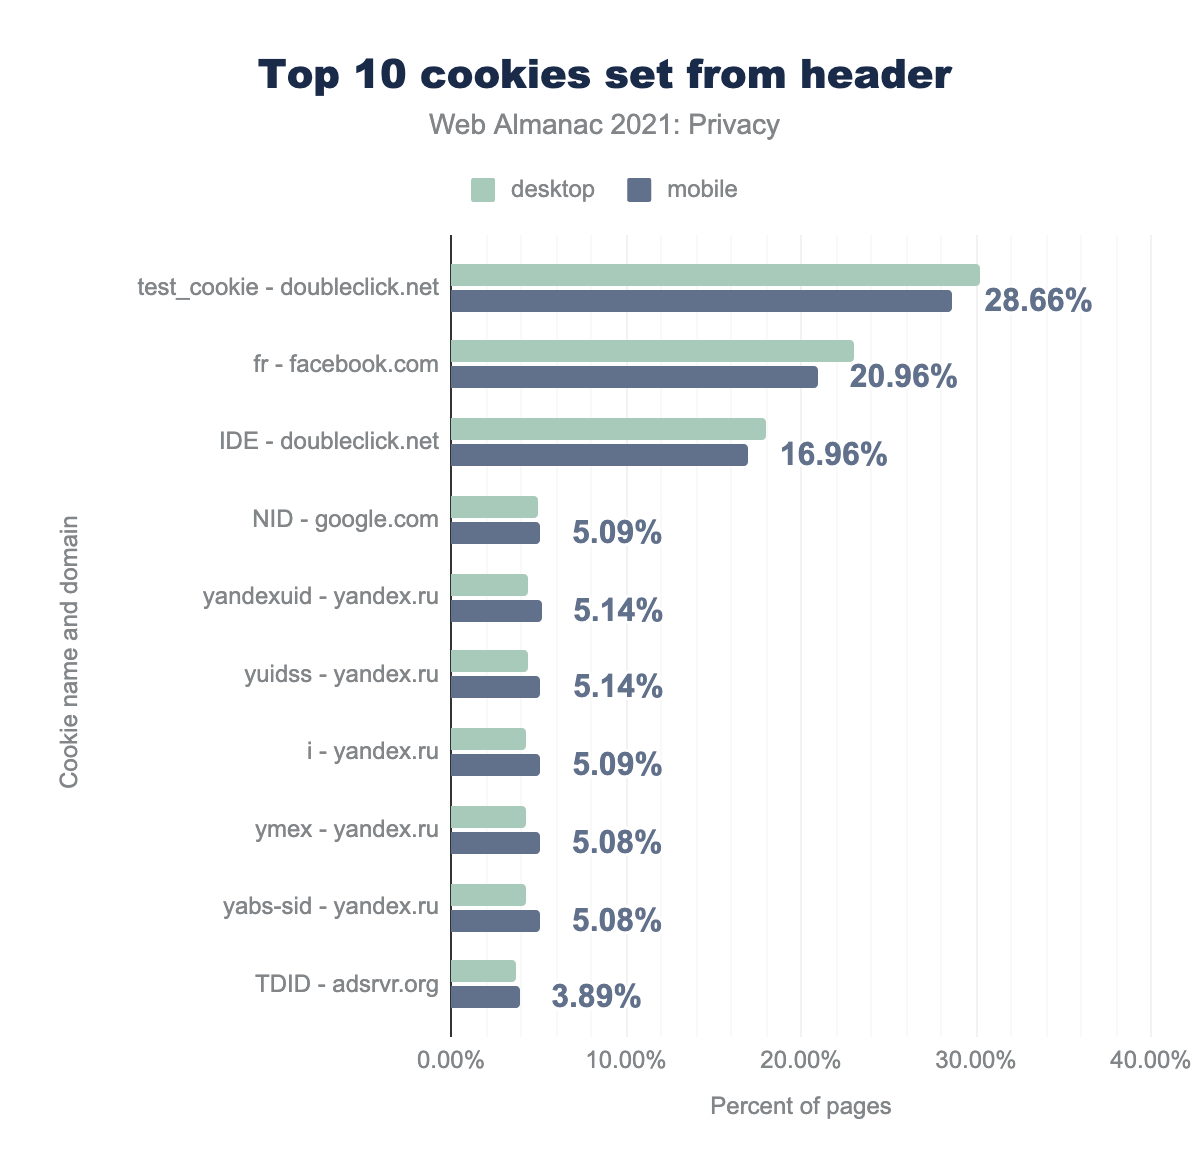 Top 10 cookies set from headers.